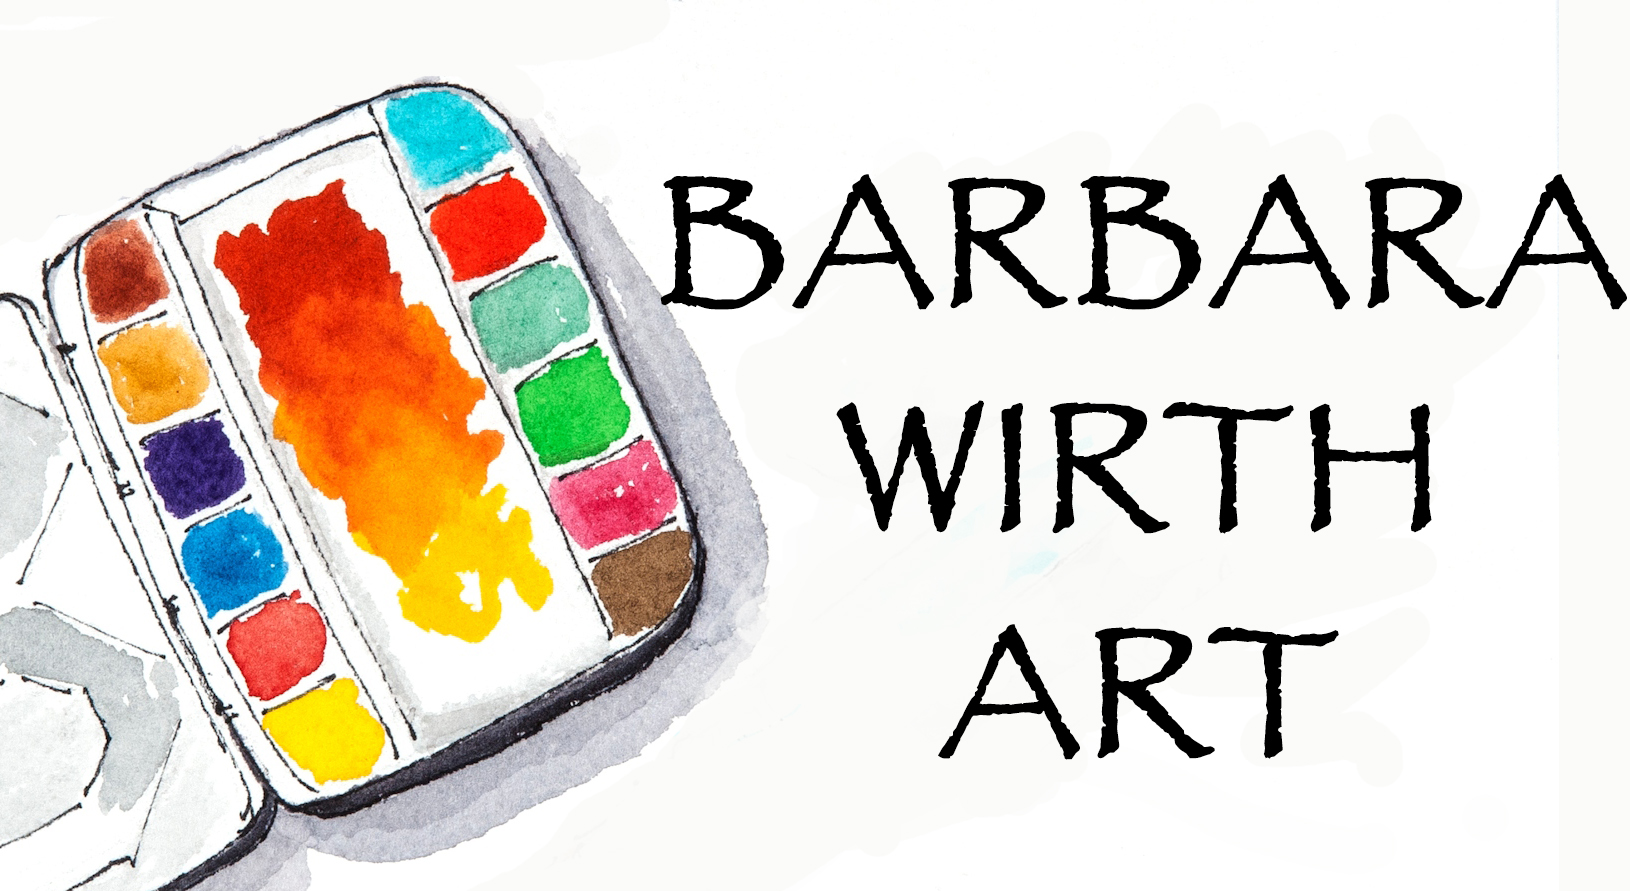 Barbara Wirth - Artist Website